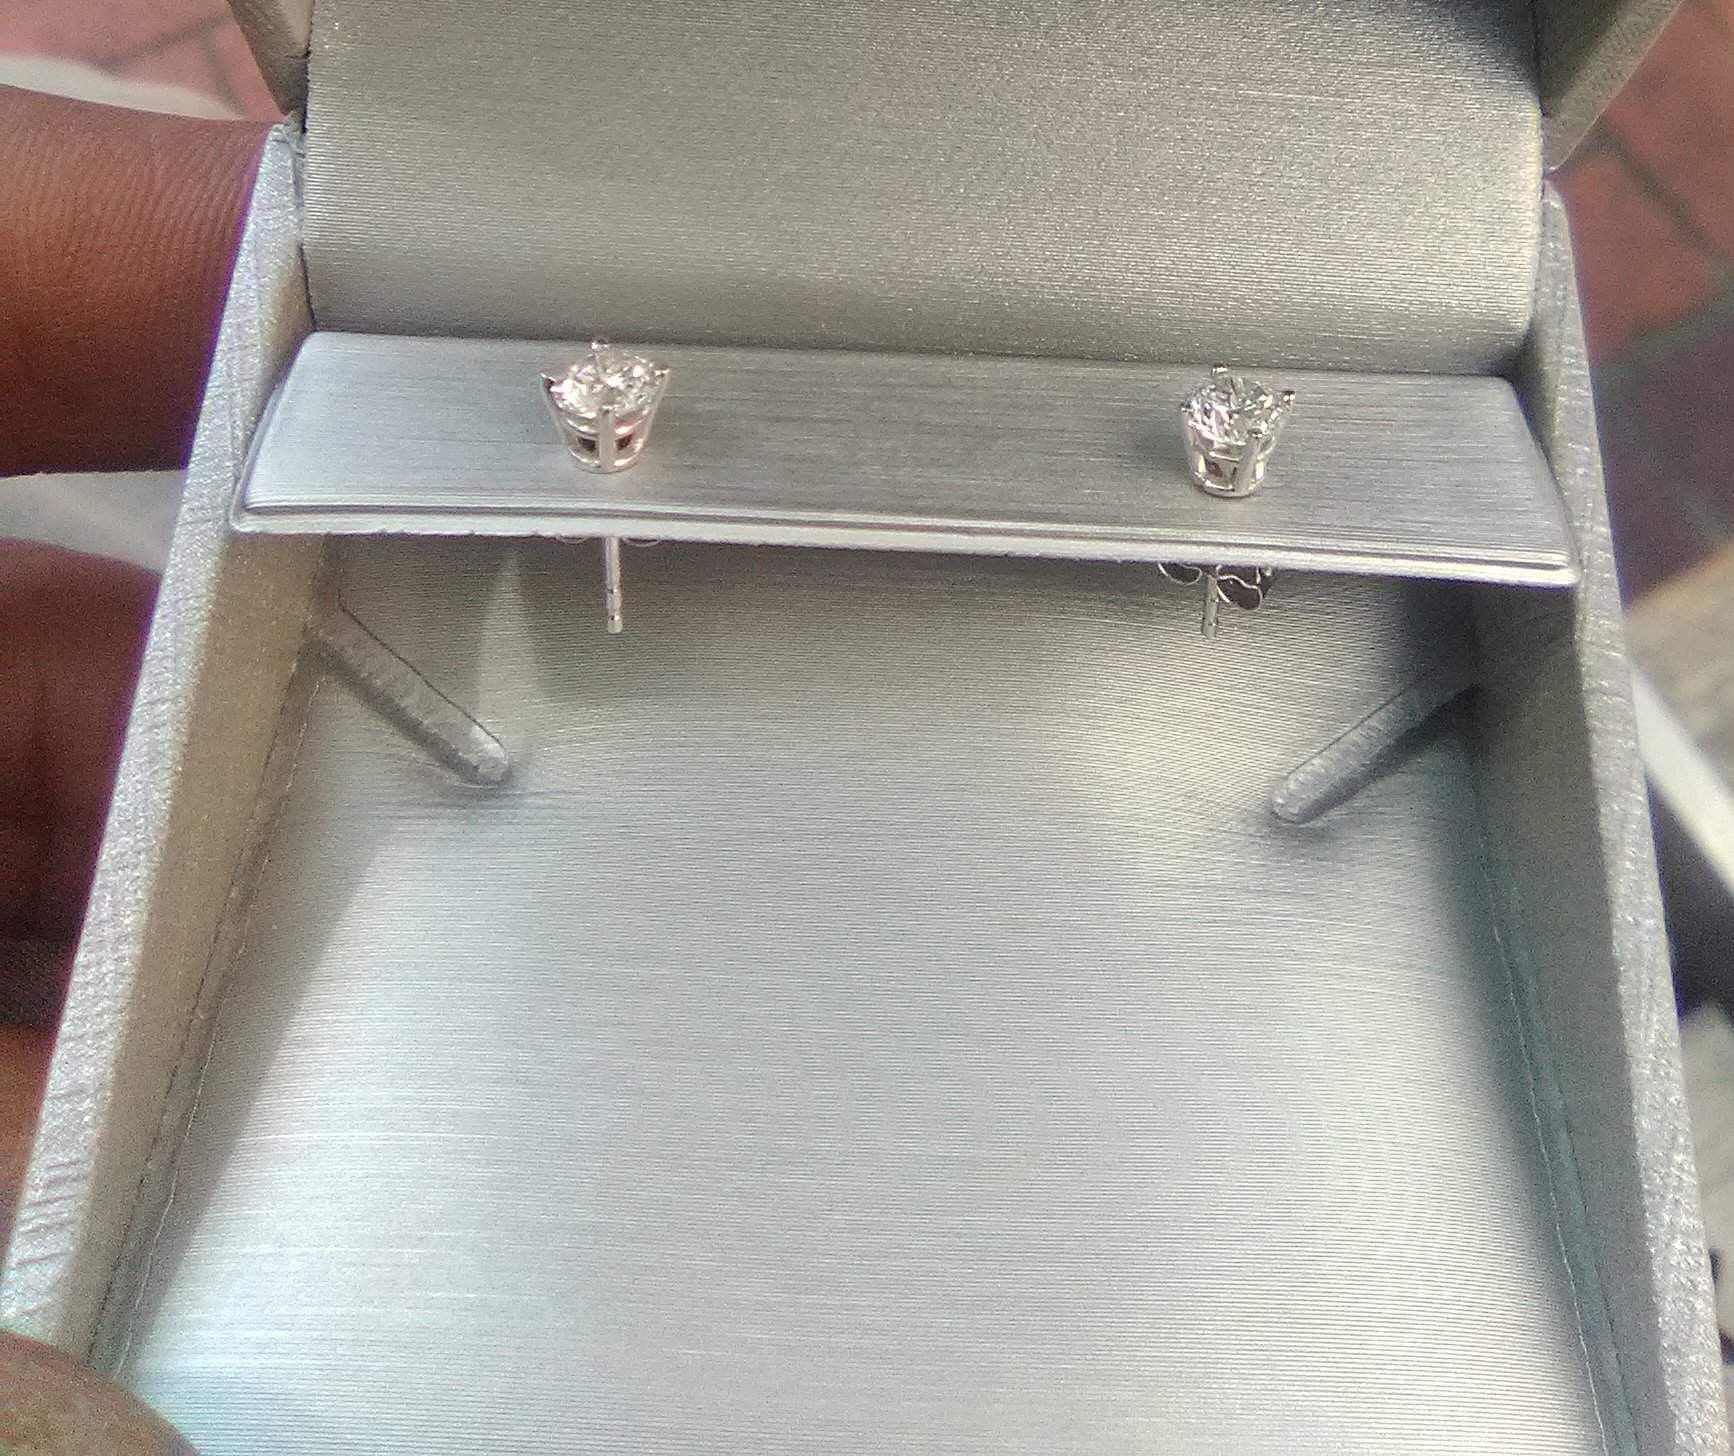 Half a carrot white gold diamond 💎 earrings for 600.00